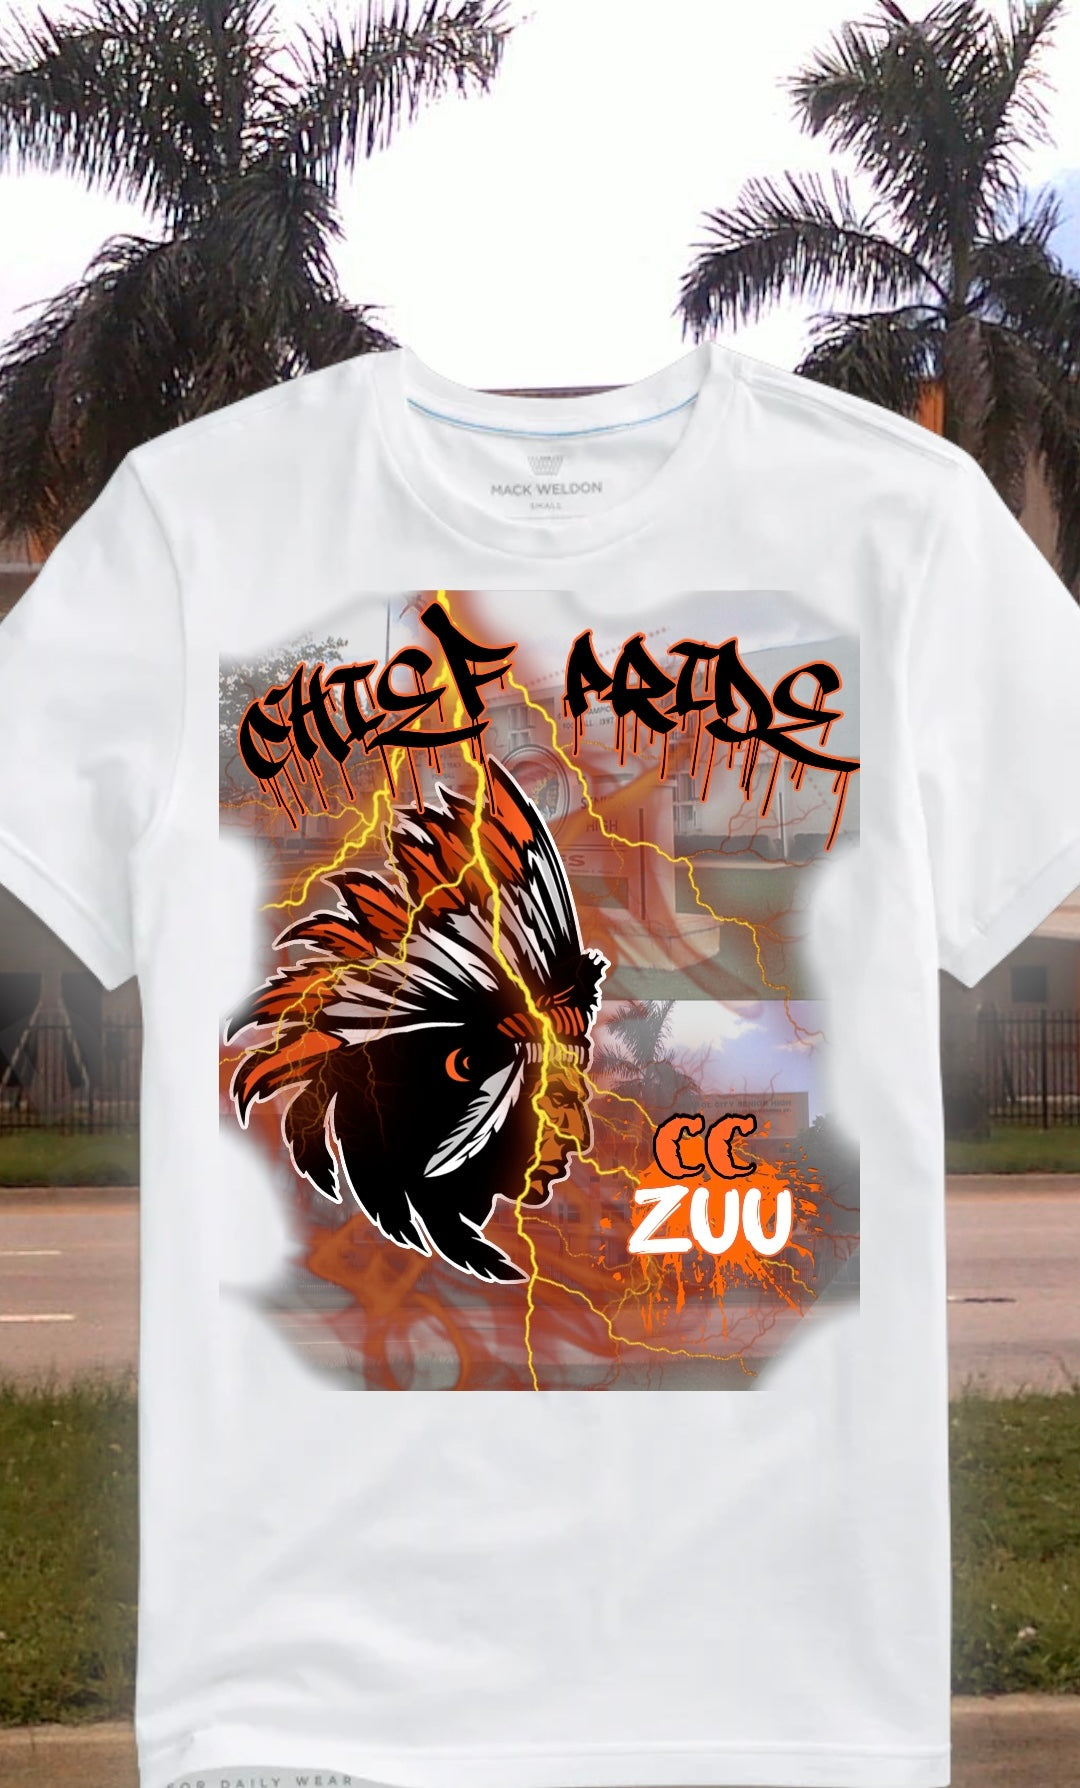 Chief Pride Zuu shirts